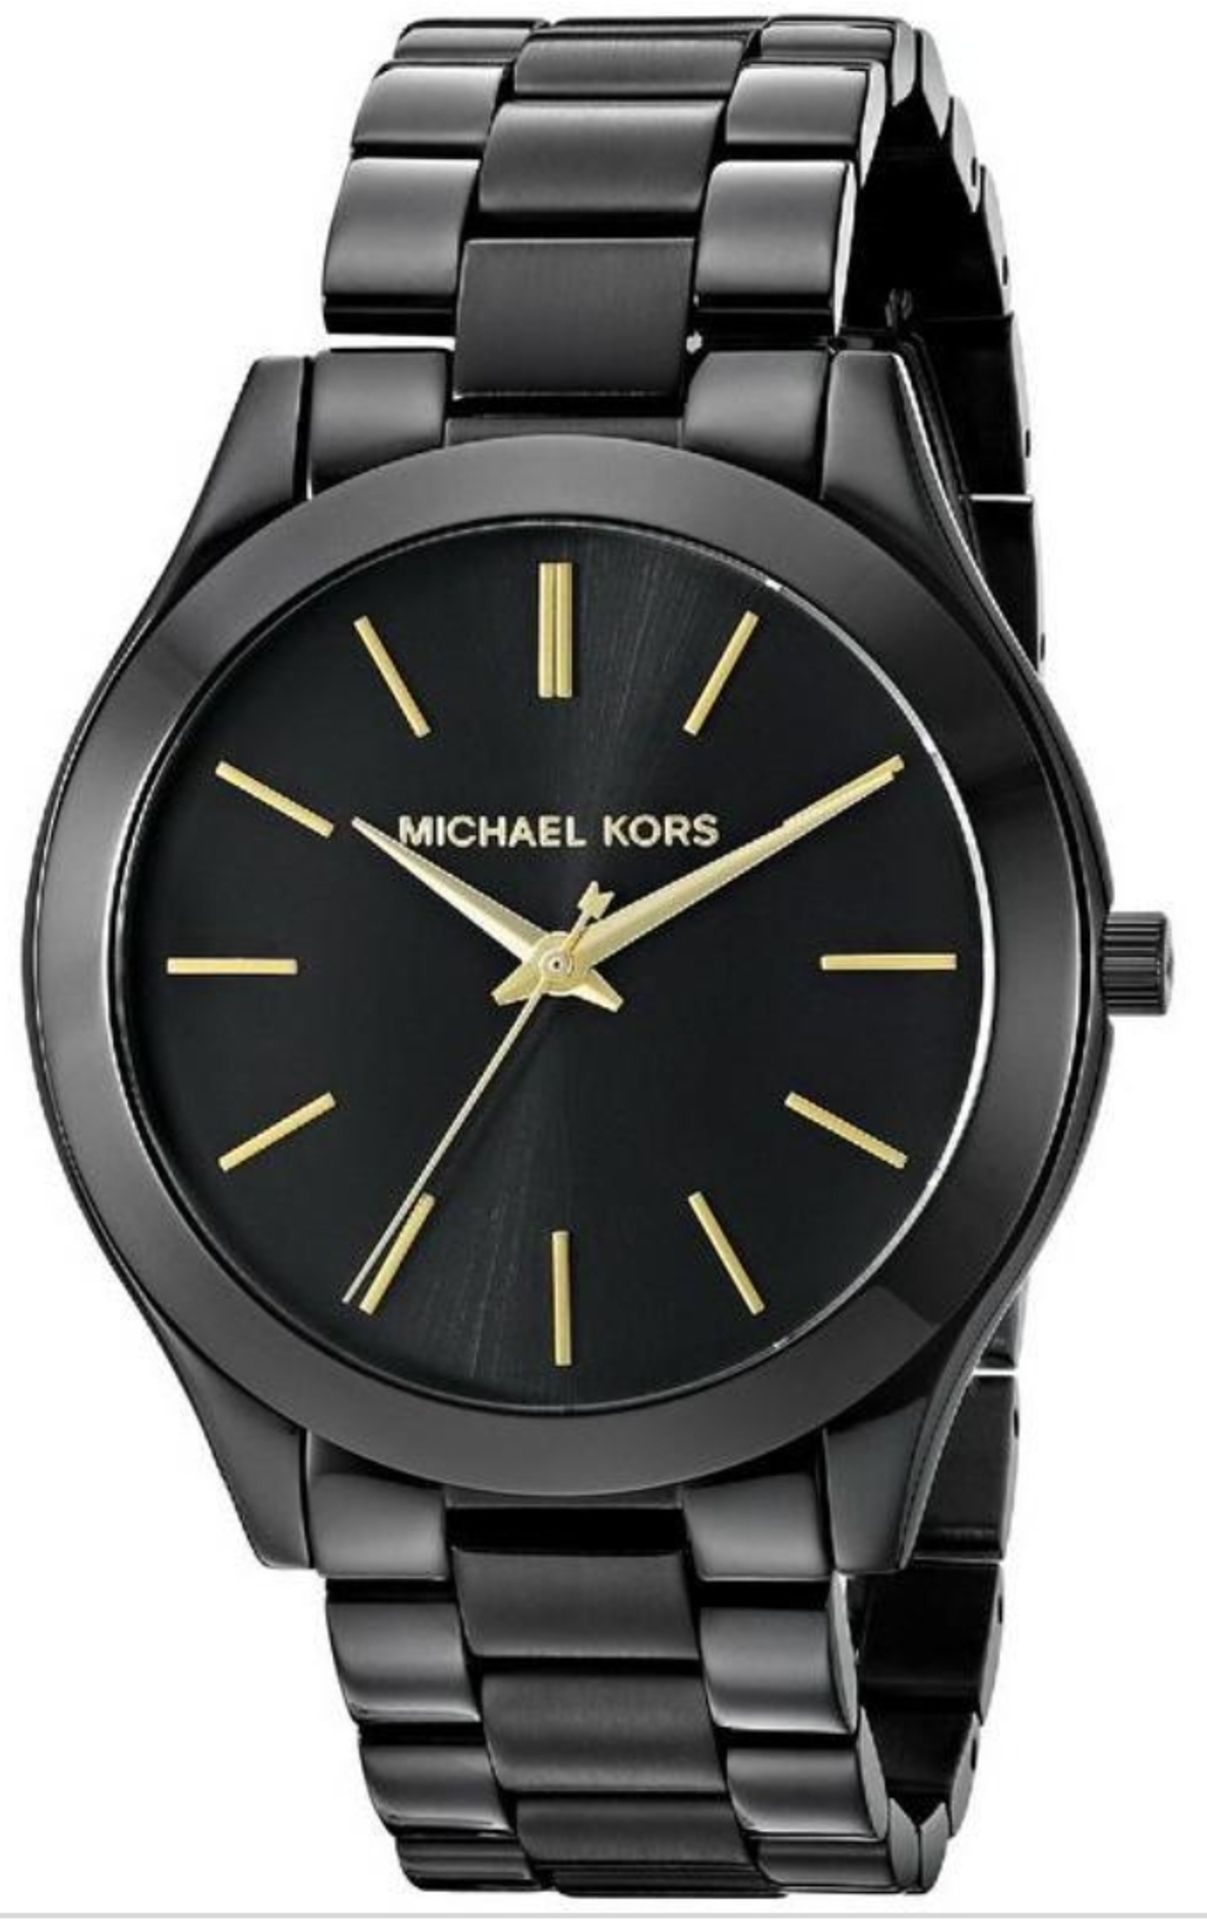 Michael Kors MK3221 Ladies Slim Runway Black Bracelet Quartz Watch - Image 3 of 6